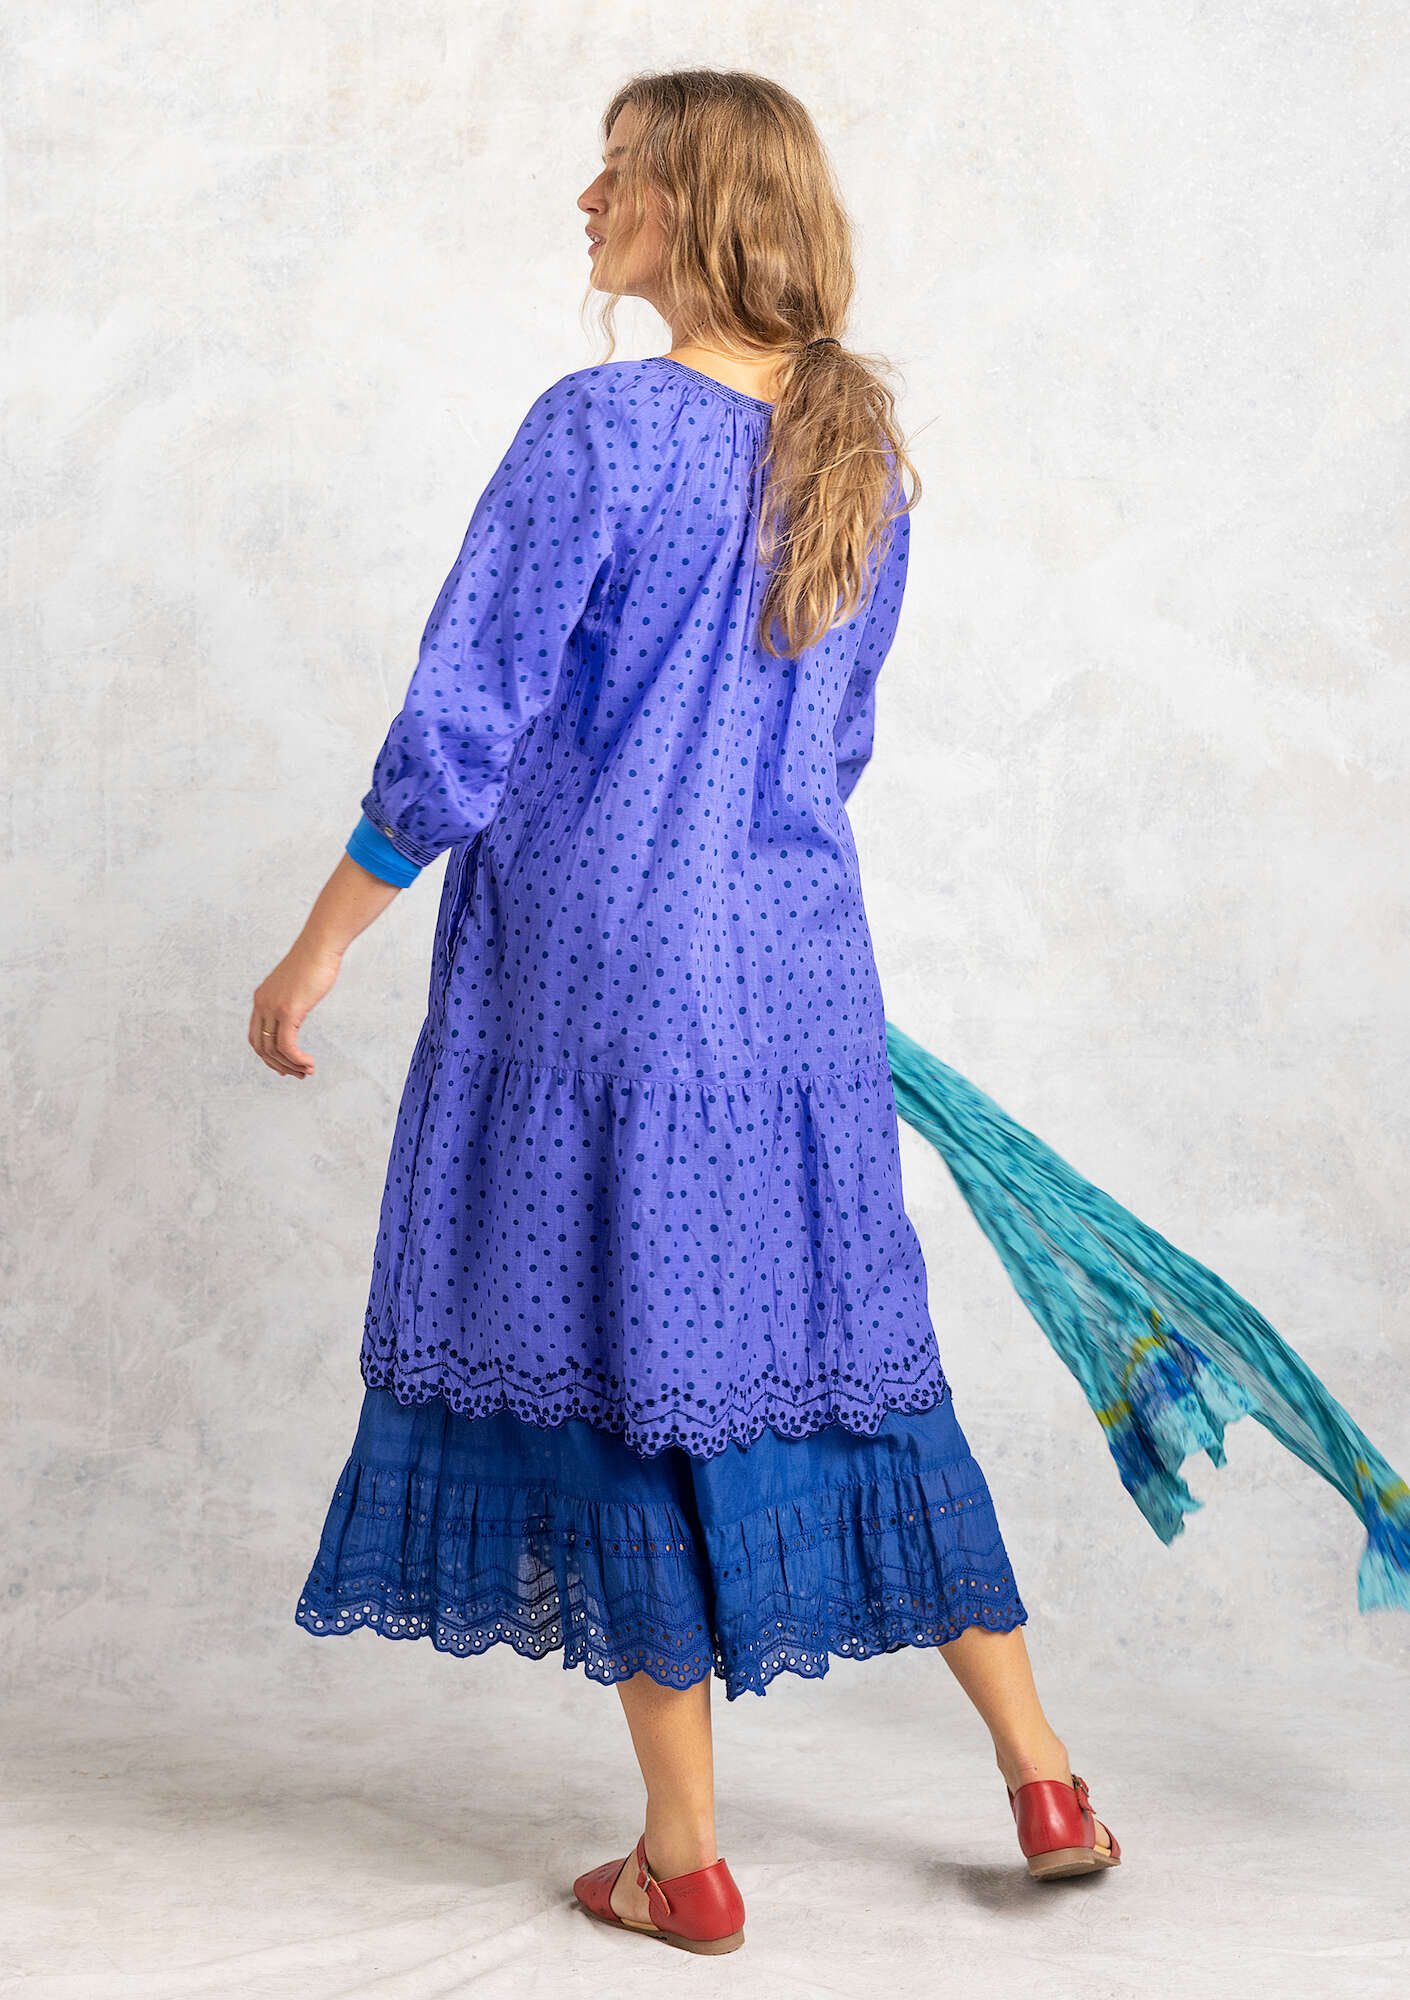 Vevd kjole «Lilly» i økologisk bomull blå lotus